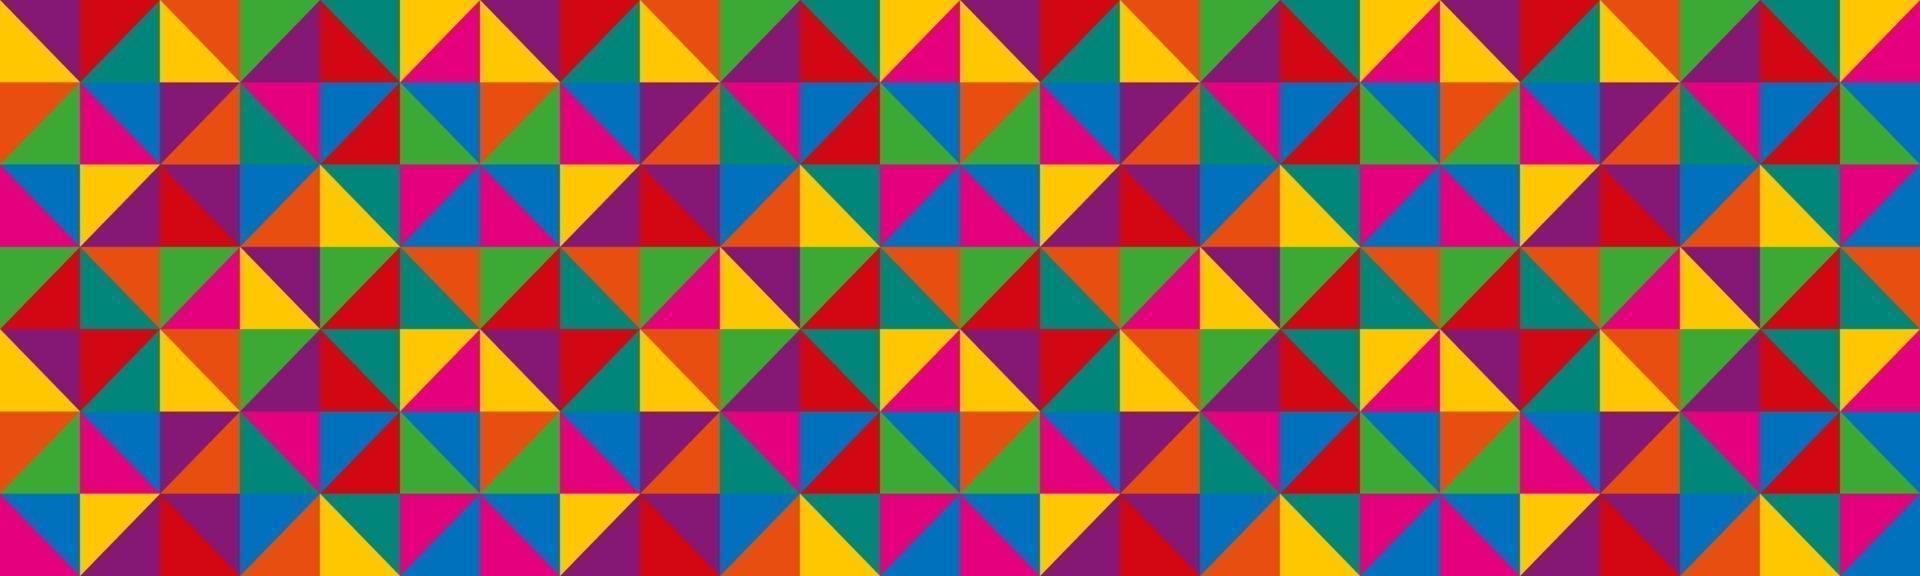 abstract vector driehoeken koptekst. kleurrijke geometrische driehoekige banner. naadloze patroon van geometrische vormen. kleurrijk mozaïek